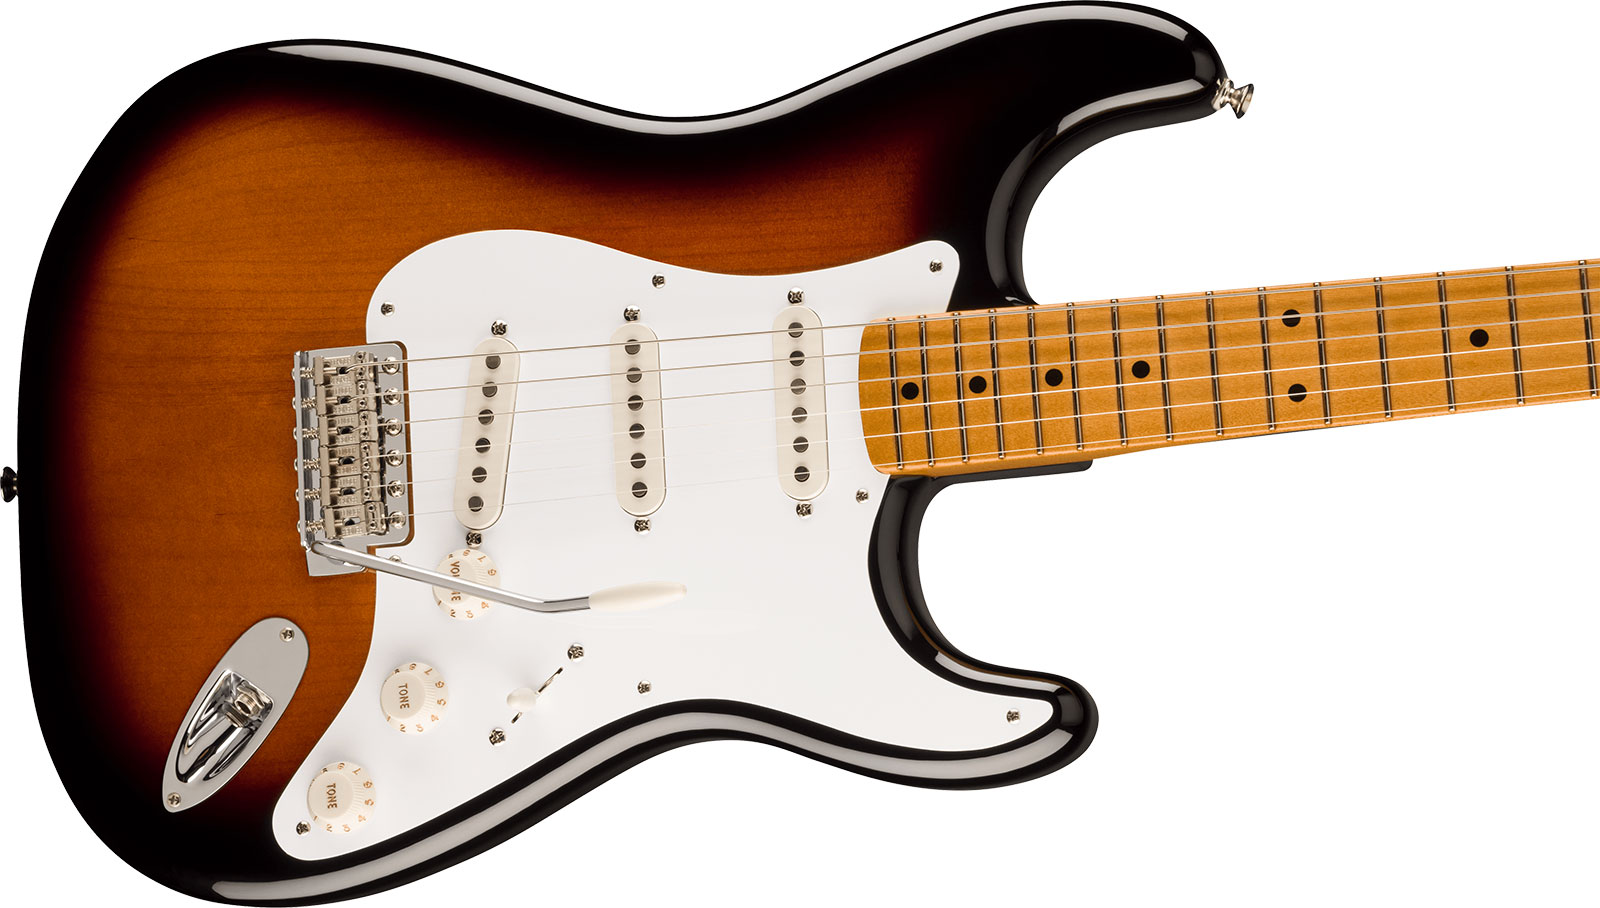 Fender Strat 50s Vintera 2 Mex 3s Trem Mn - 2-color Sunburst - E-Gitarre in Str-Form - Variation 2